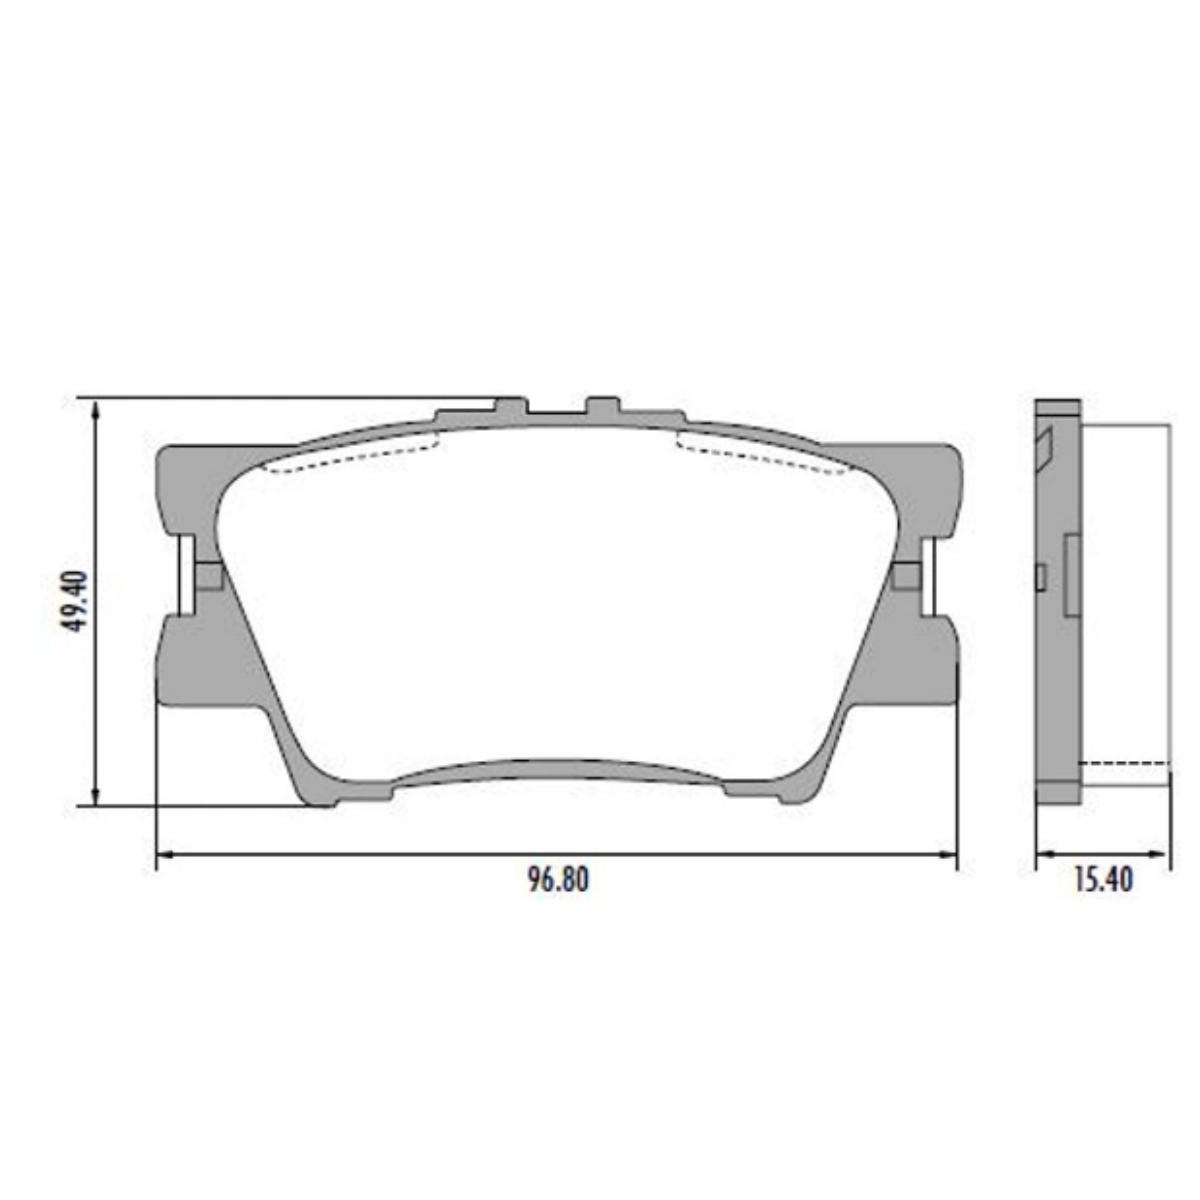 Pastilha Freio Toyota Rav-4 2.5 4wd At. 01/2013 Ate 12/2015 Traseiro. Sistema Akebono. Antirruido Fras-le Pd/753